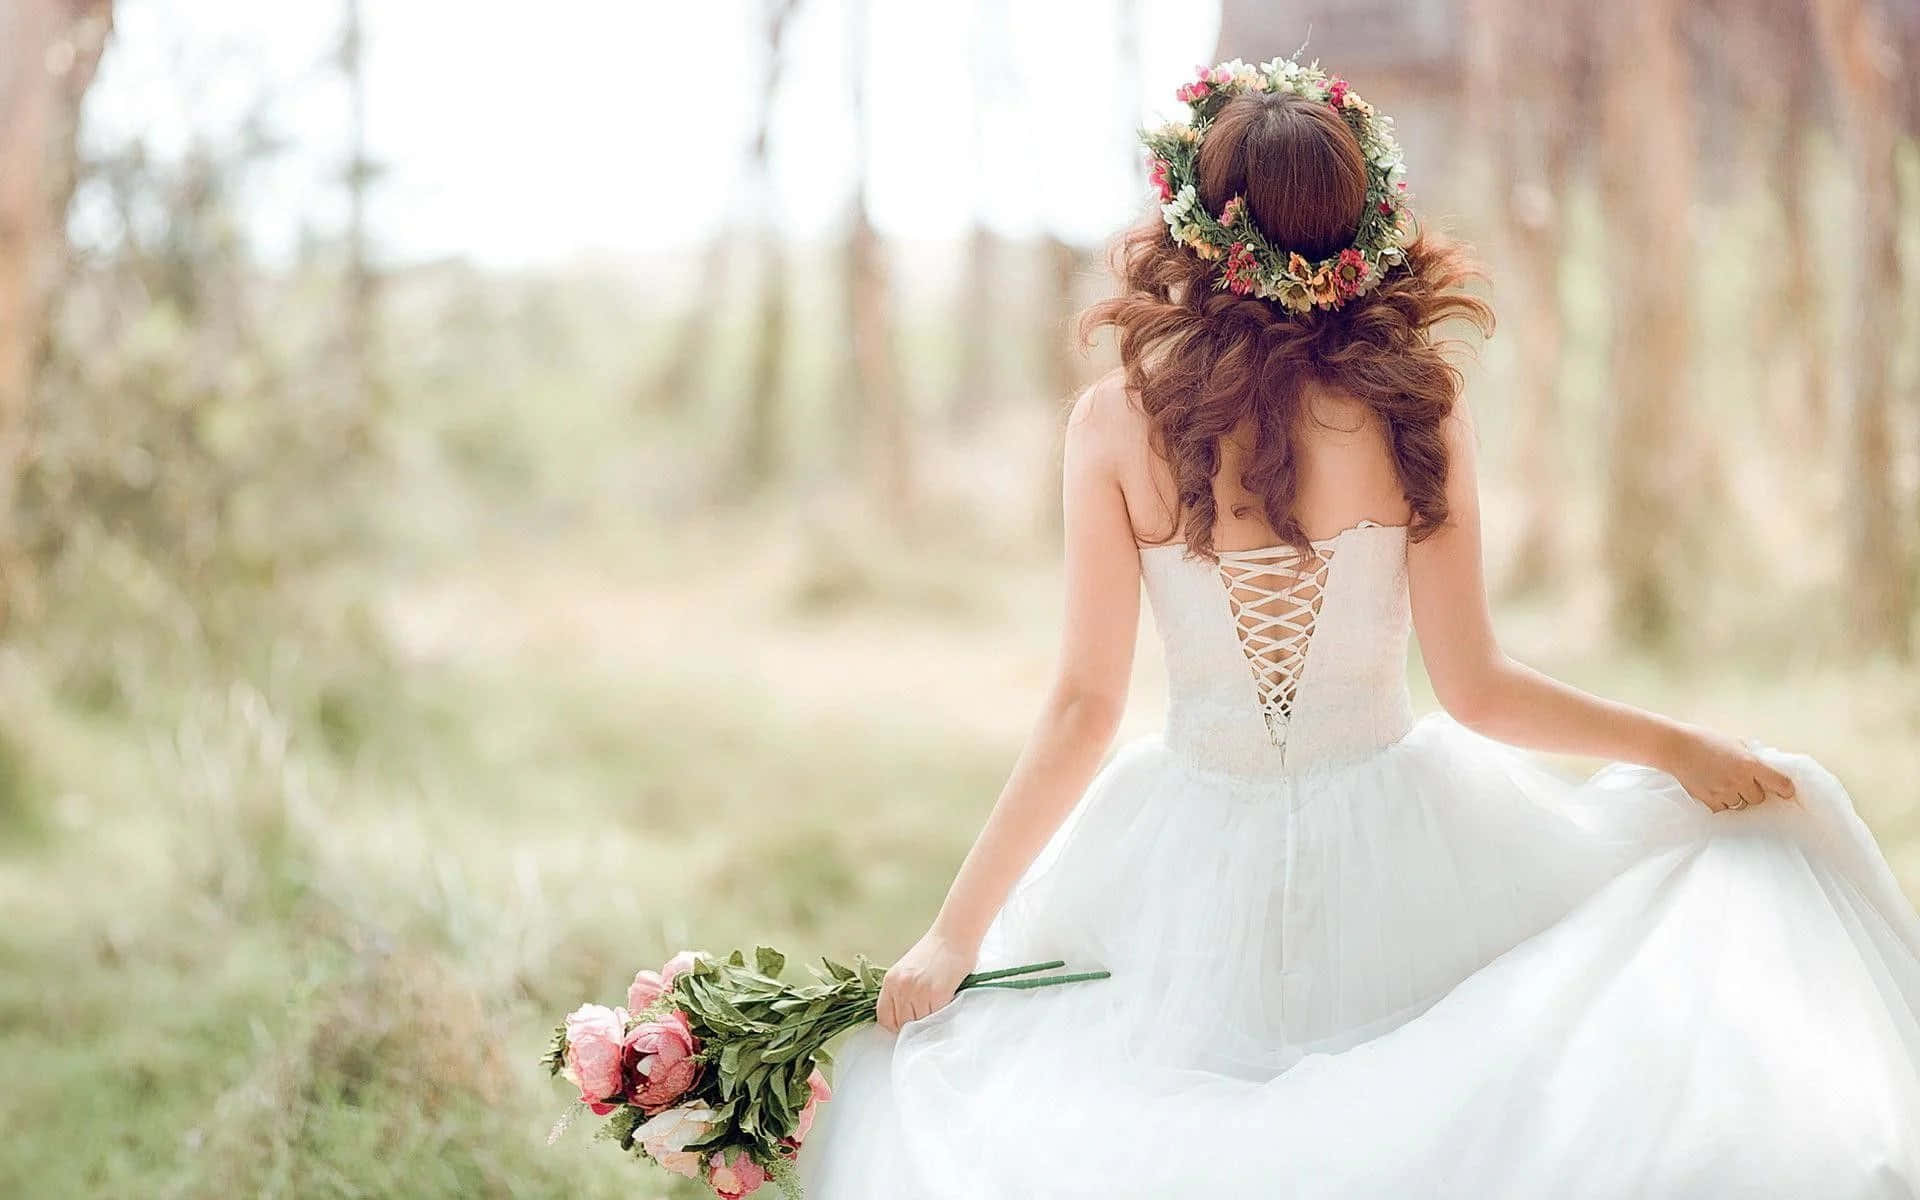 Elegant Bride in a Beautiful Wedding Gown